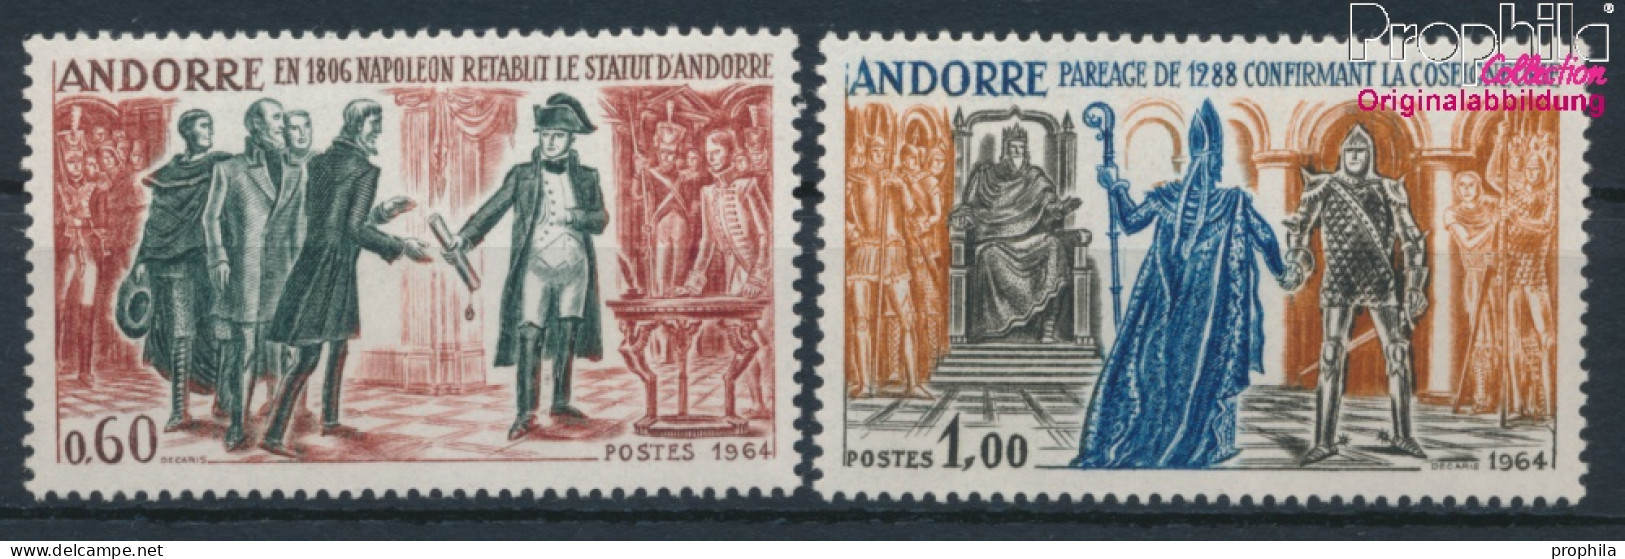 Andorra - Französische Post 183-184 (kompl.Ausg.) Postfrisch 1964 Geschichtsbilder (10368755 - Ongebruikt